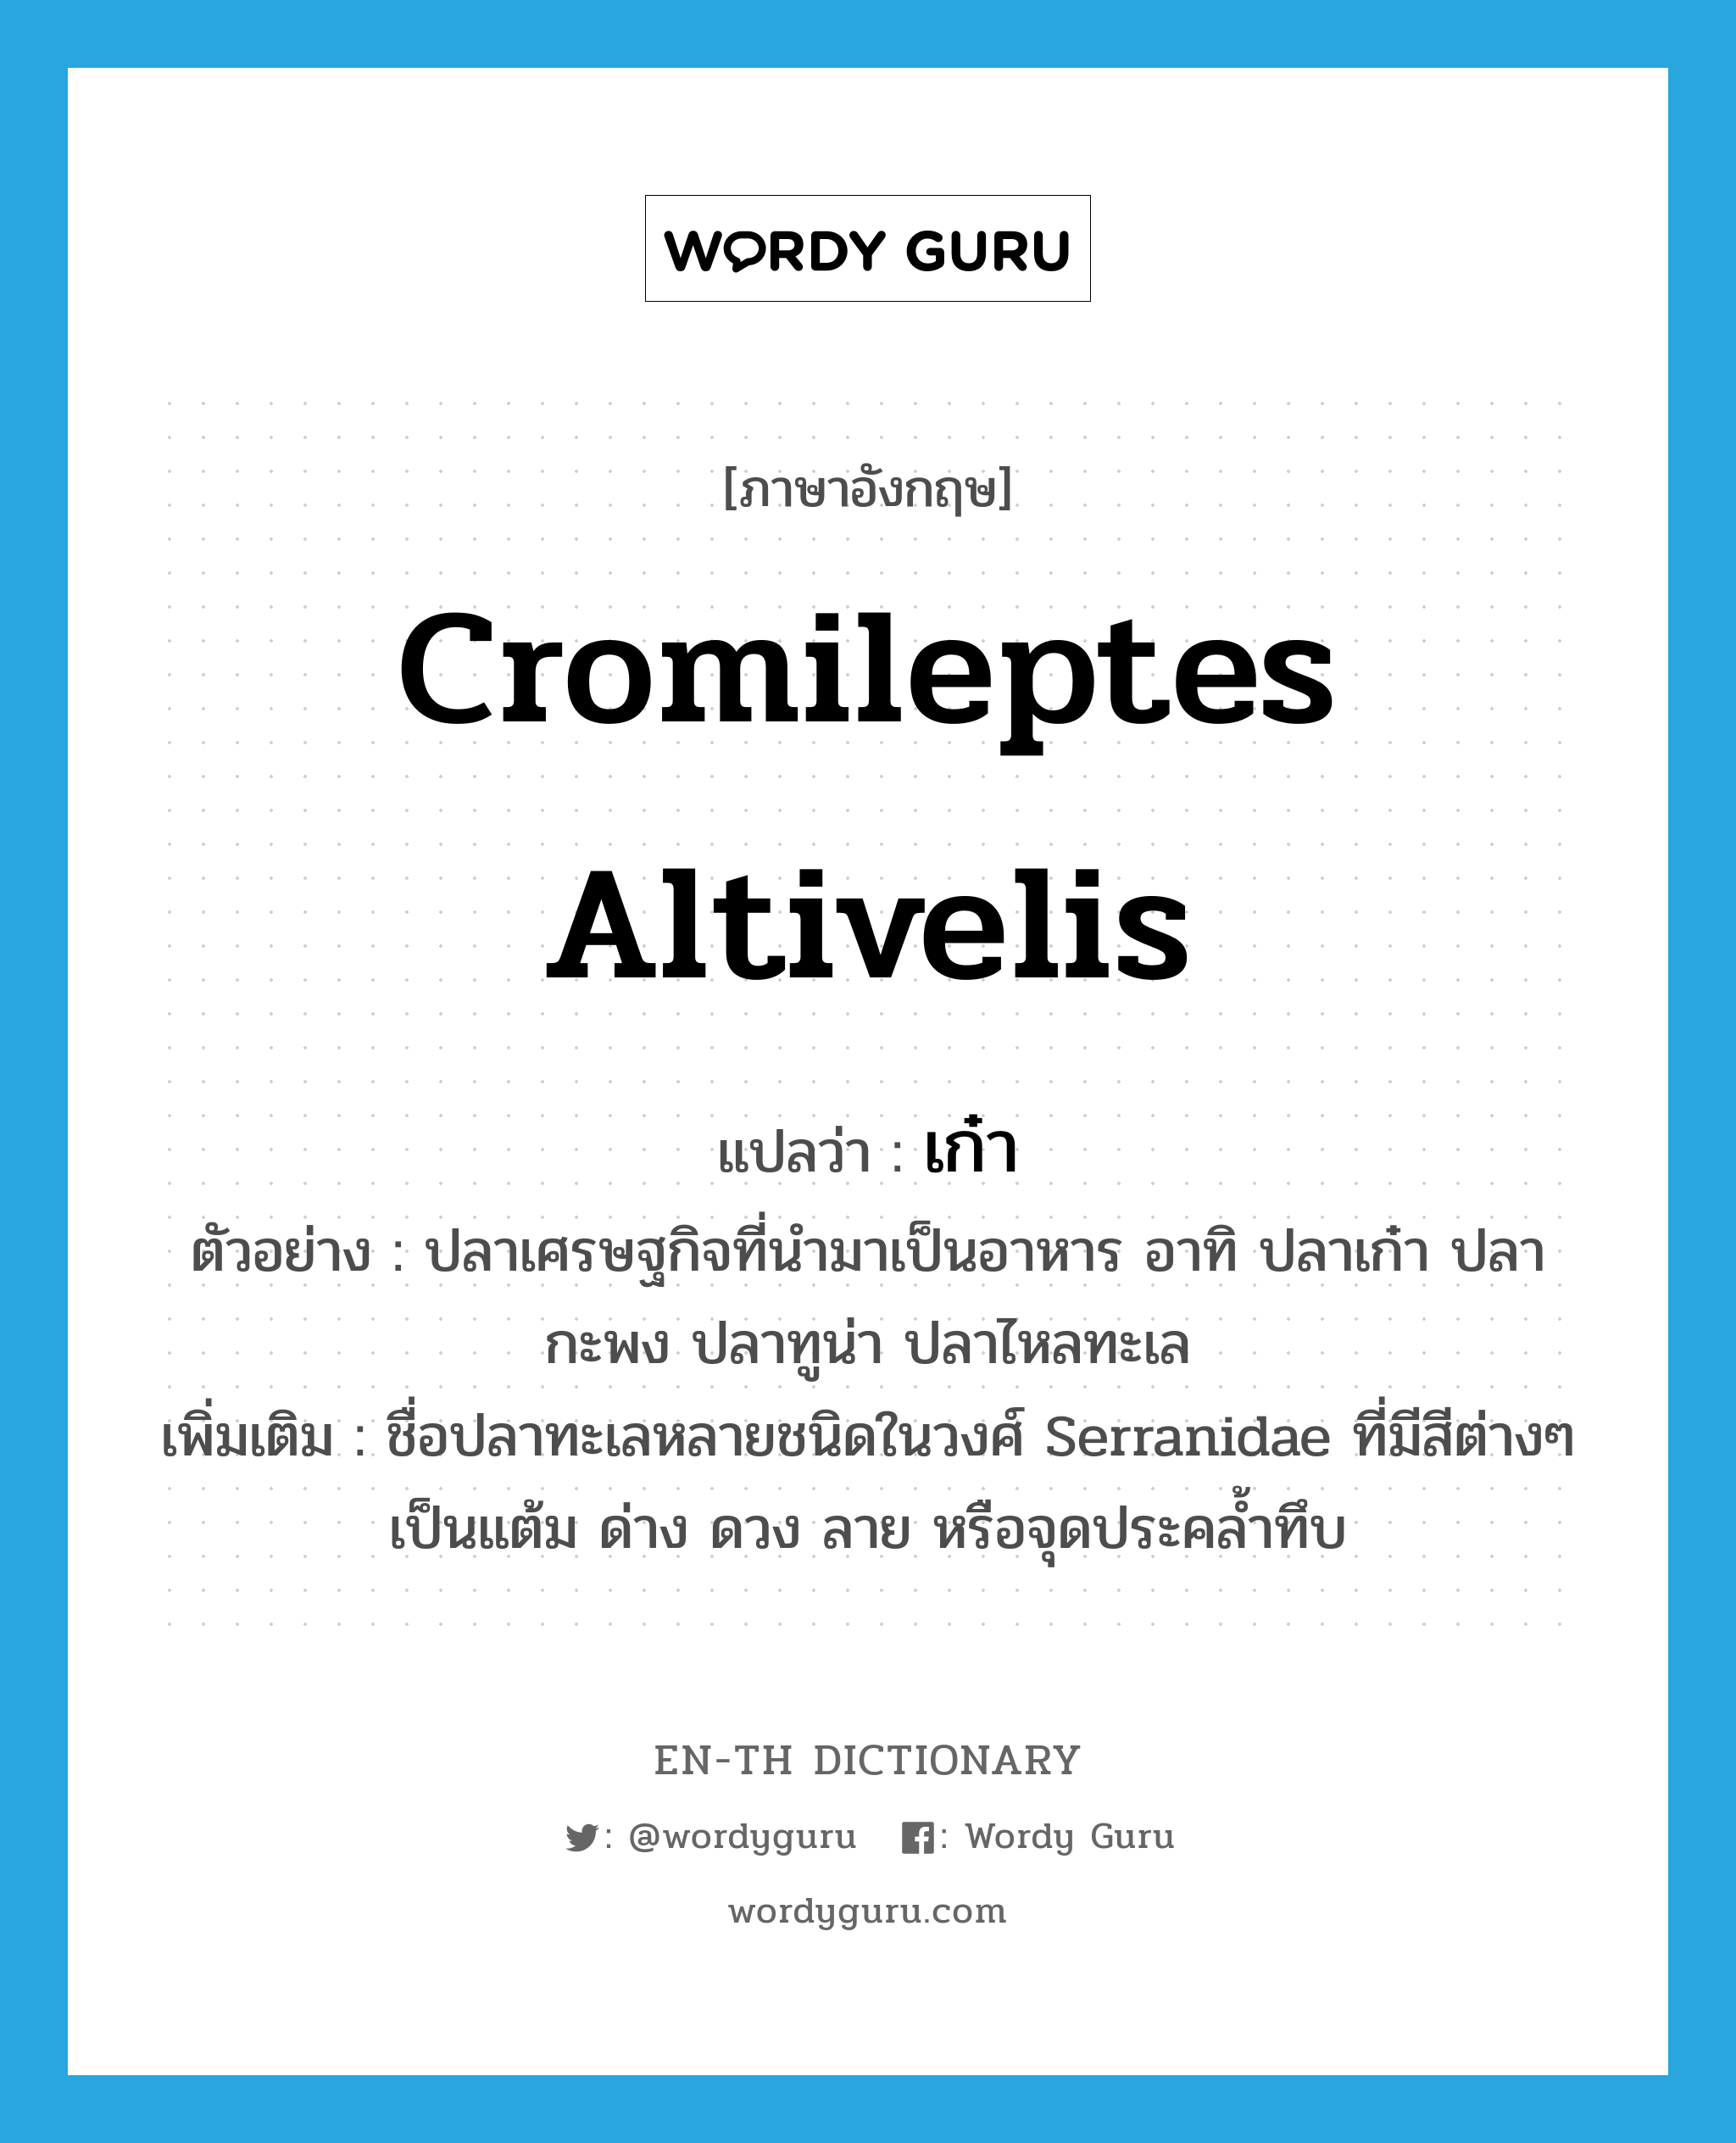 Cromileptes altivelis แปลว่า?, คำศัพท์ภาษาอังกฤษ Cromileptes altivelis แปลว่า เก๋า ประเภท N ตัวอย่าง ปลาเศรษฐกิจที่นำมาเป็นอาหาร อาทิ ปลาเก๋า ปลากะพง ปลาทูน่า ปลาไหลทะเล เพิ่มเติม ชื่อปลาทะเลหลายชนิดในวงศ์ Serranidae ที่มีสีต่างๆ เป็นแต้ม ด่าง ดวง ลาย หรือจุดประคล้ำทึบ หมวด N